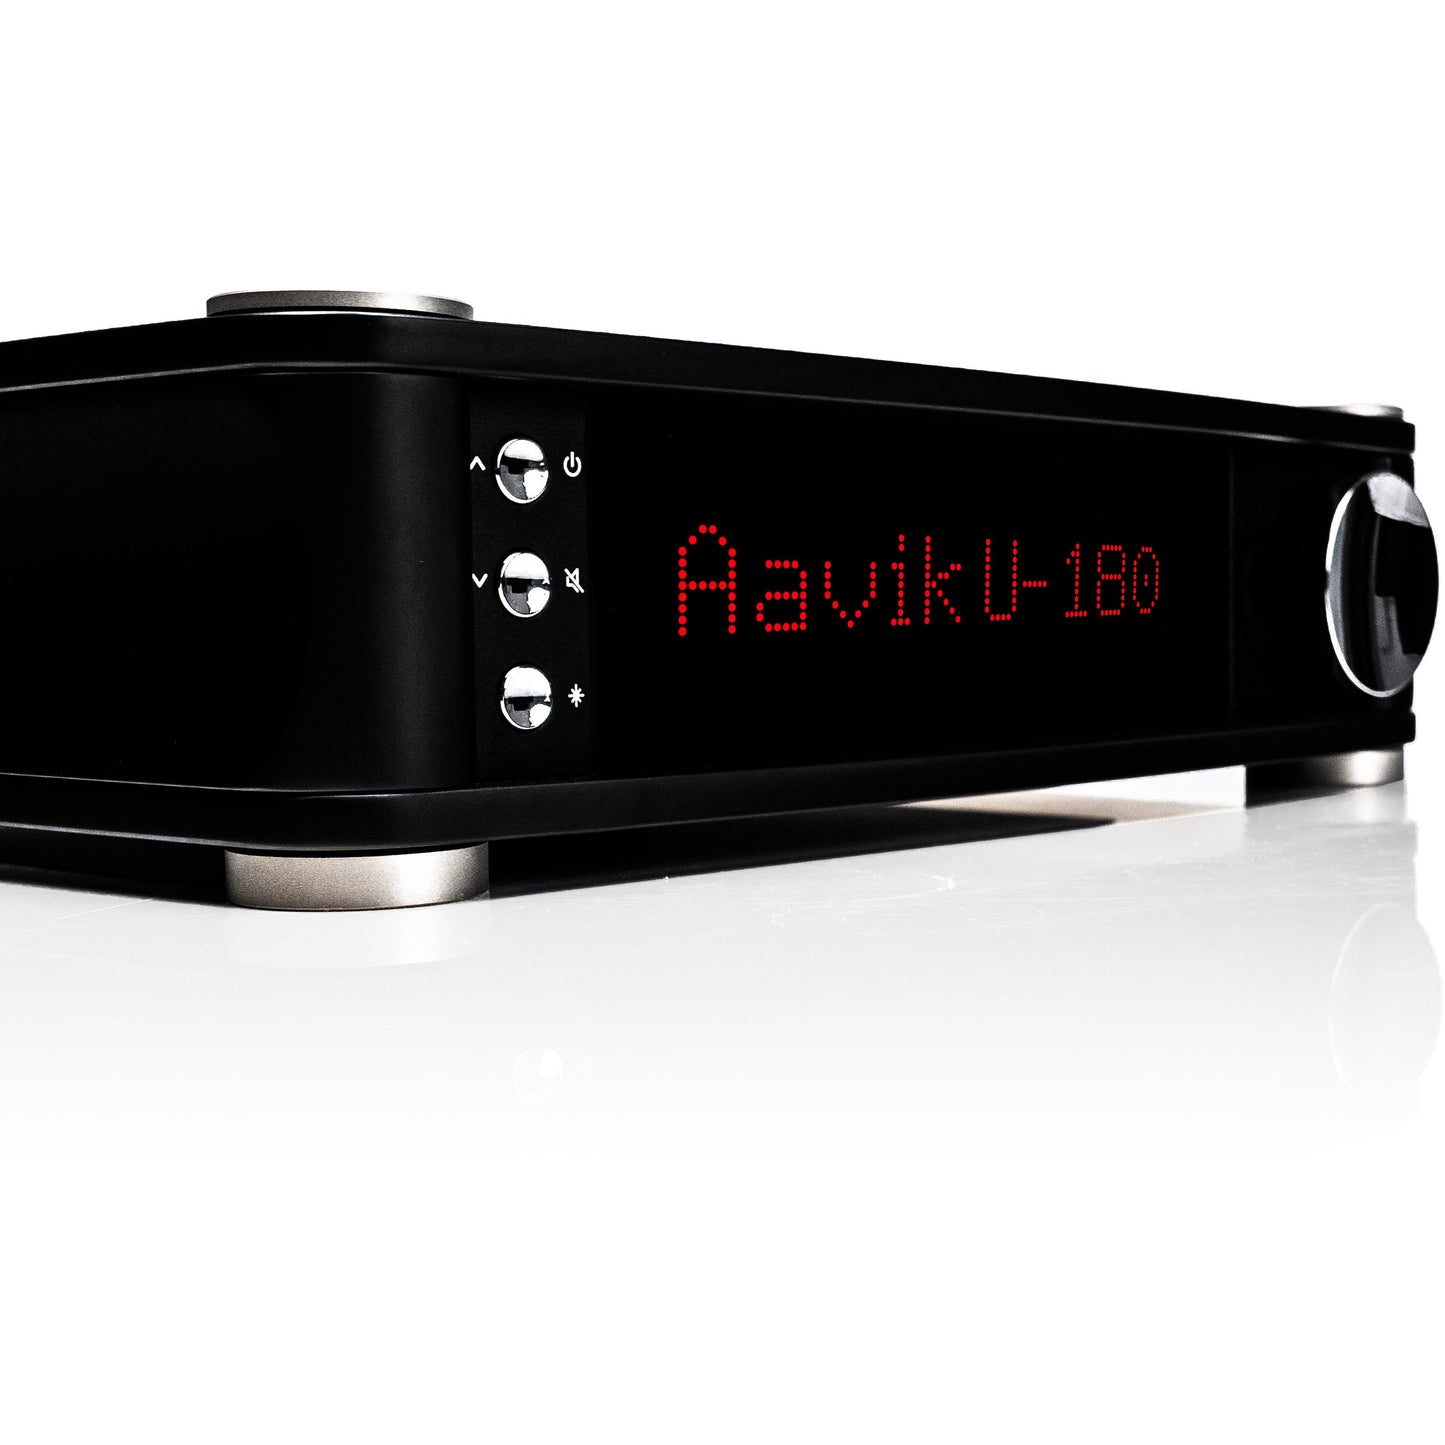 Aavik U-180 Uniti Integrated Amplifier